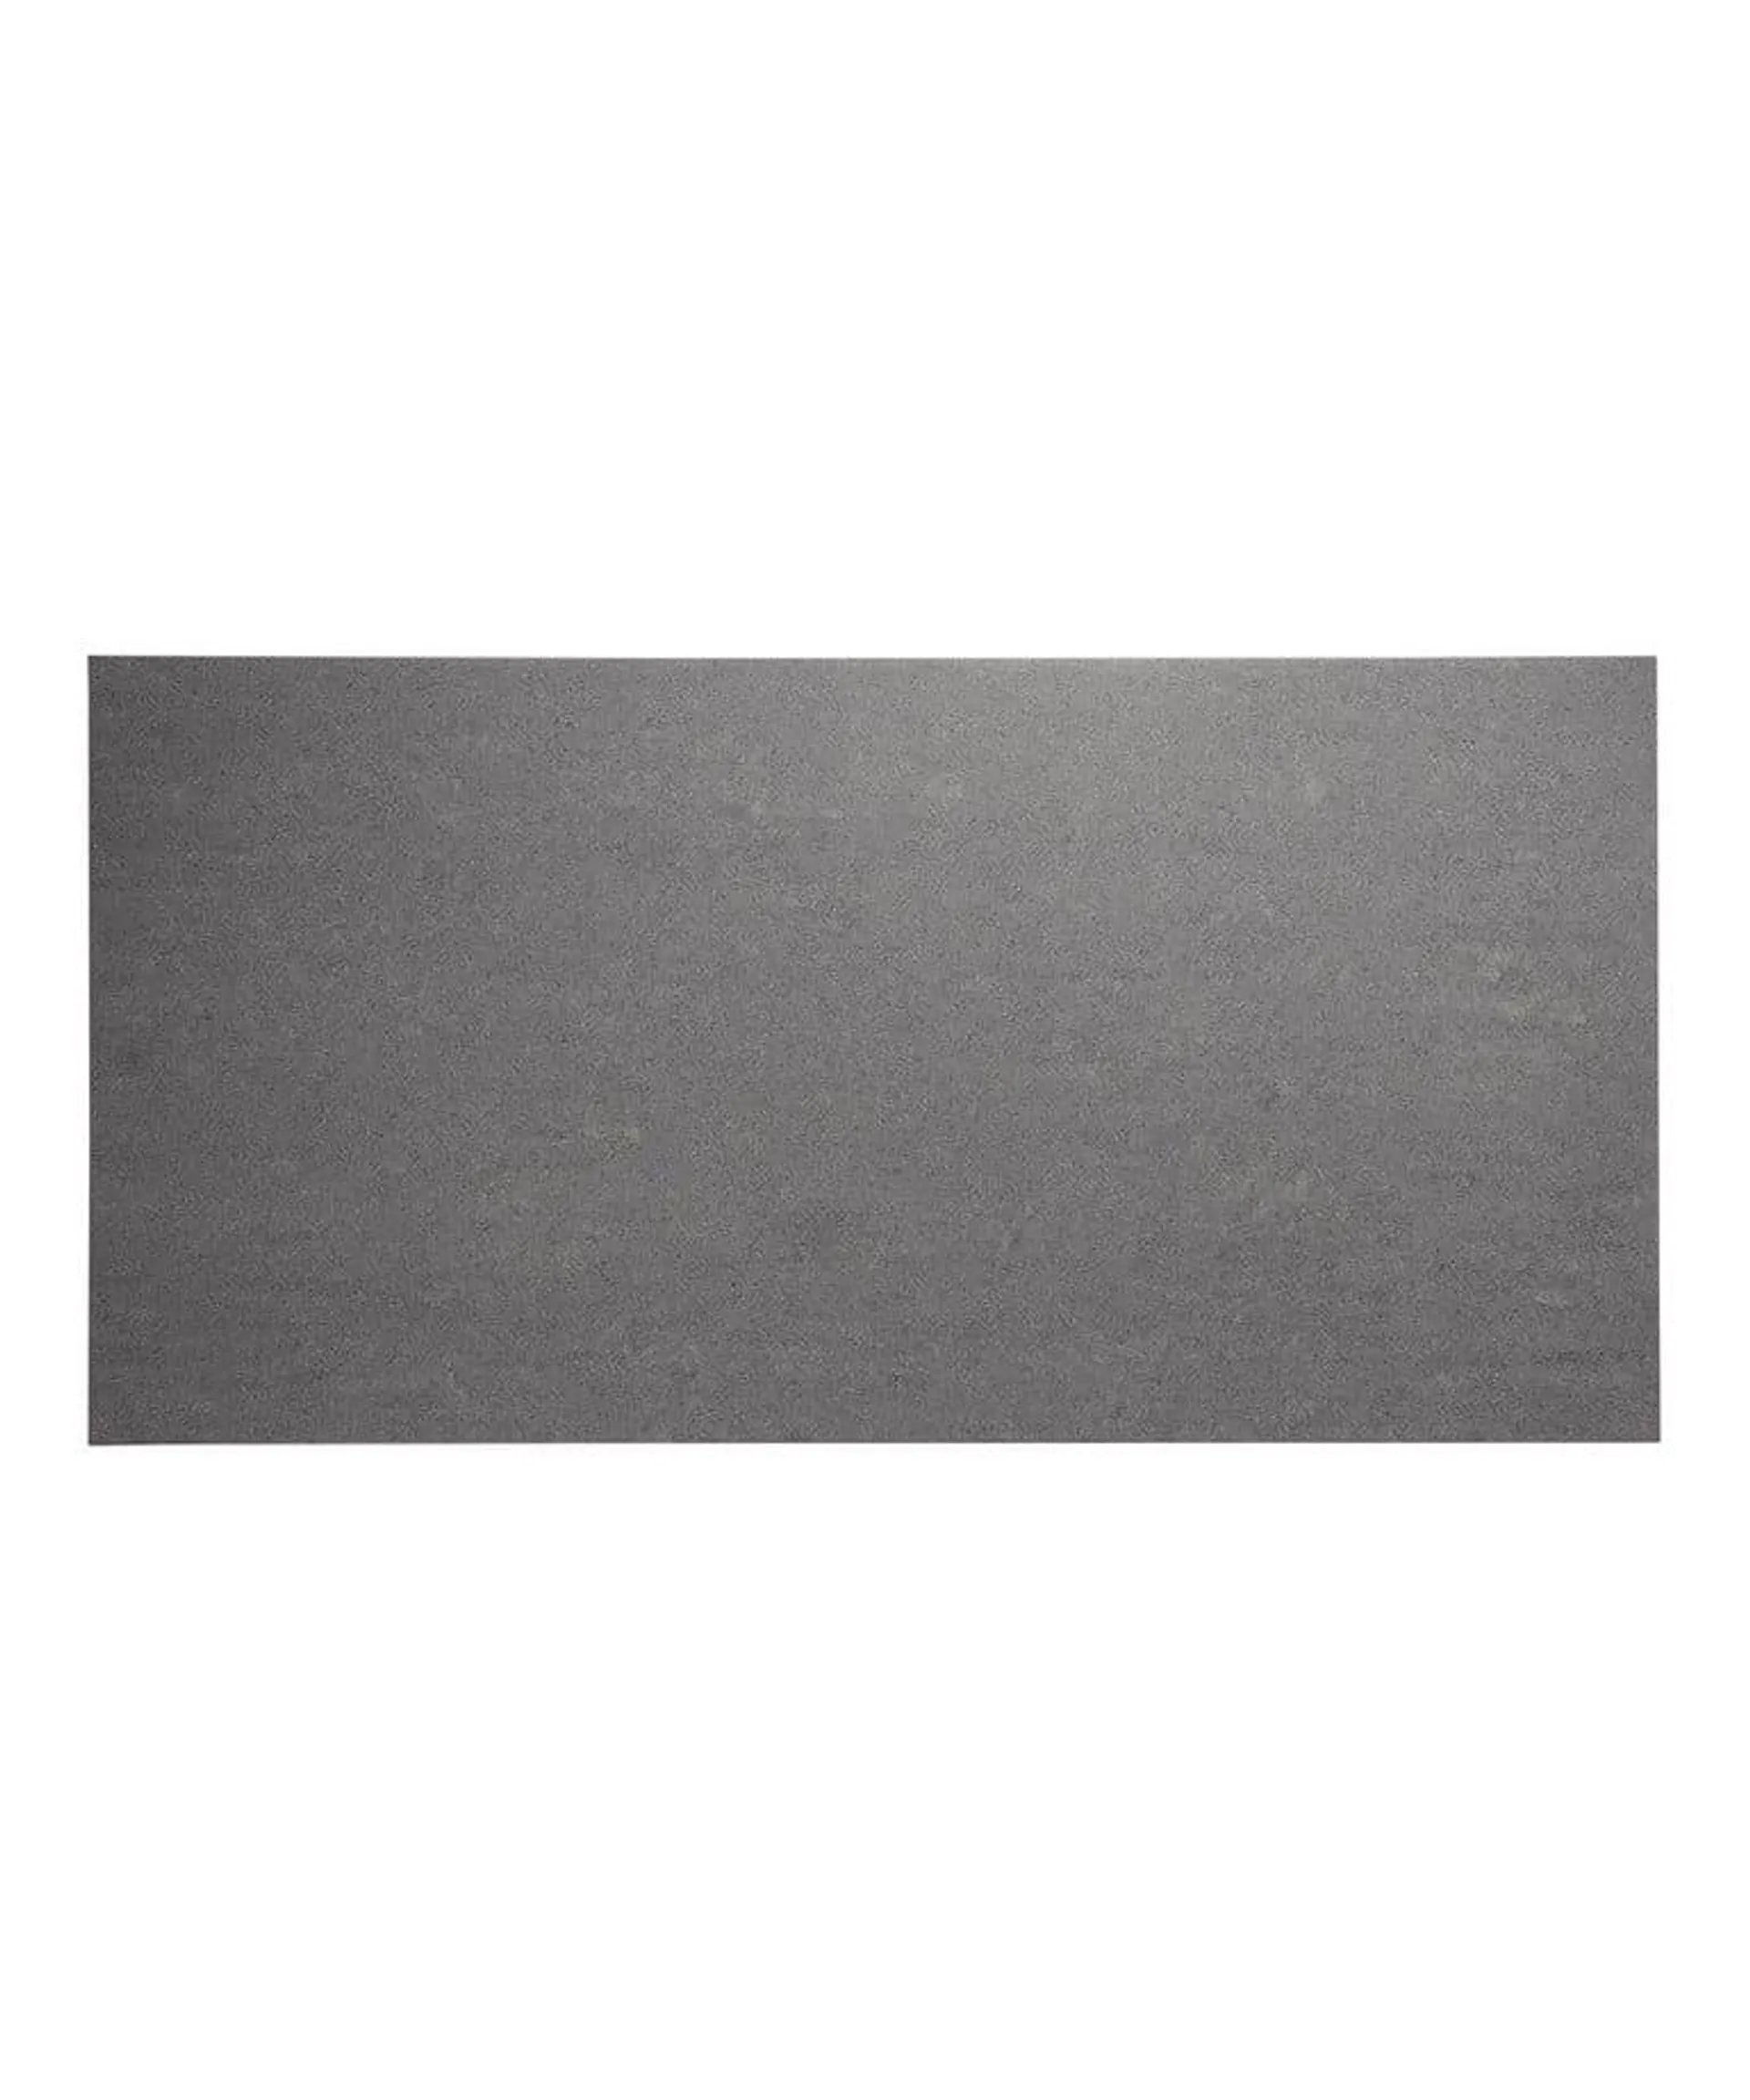 Plus Ash Slip Resistant Tile (60cm x 30cm)